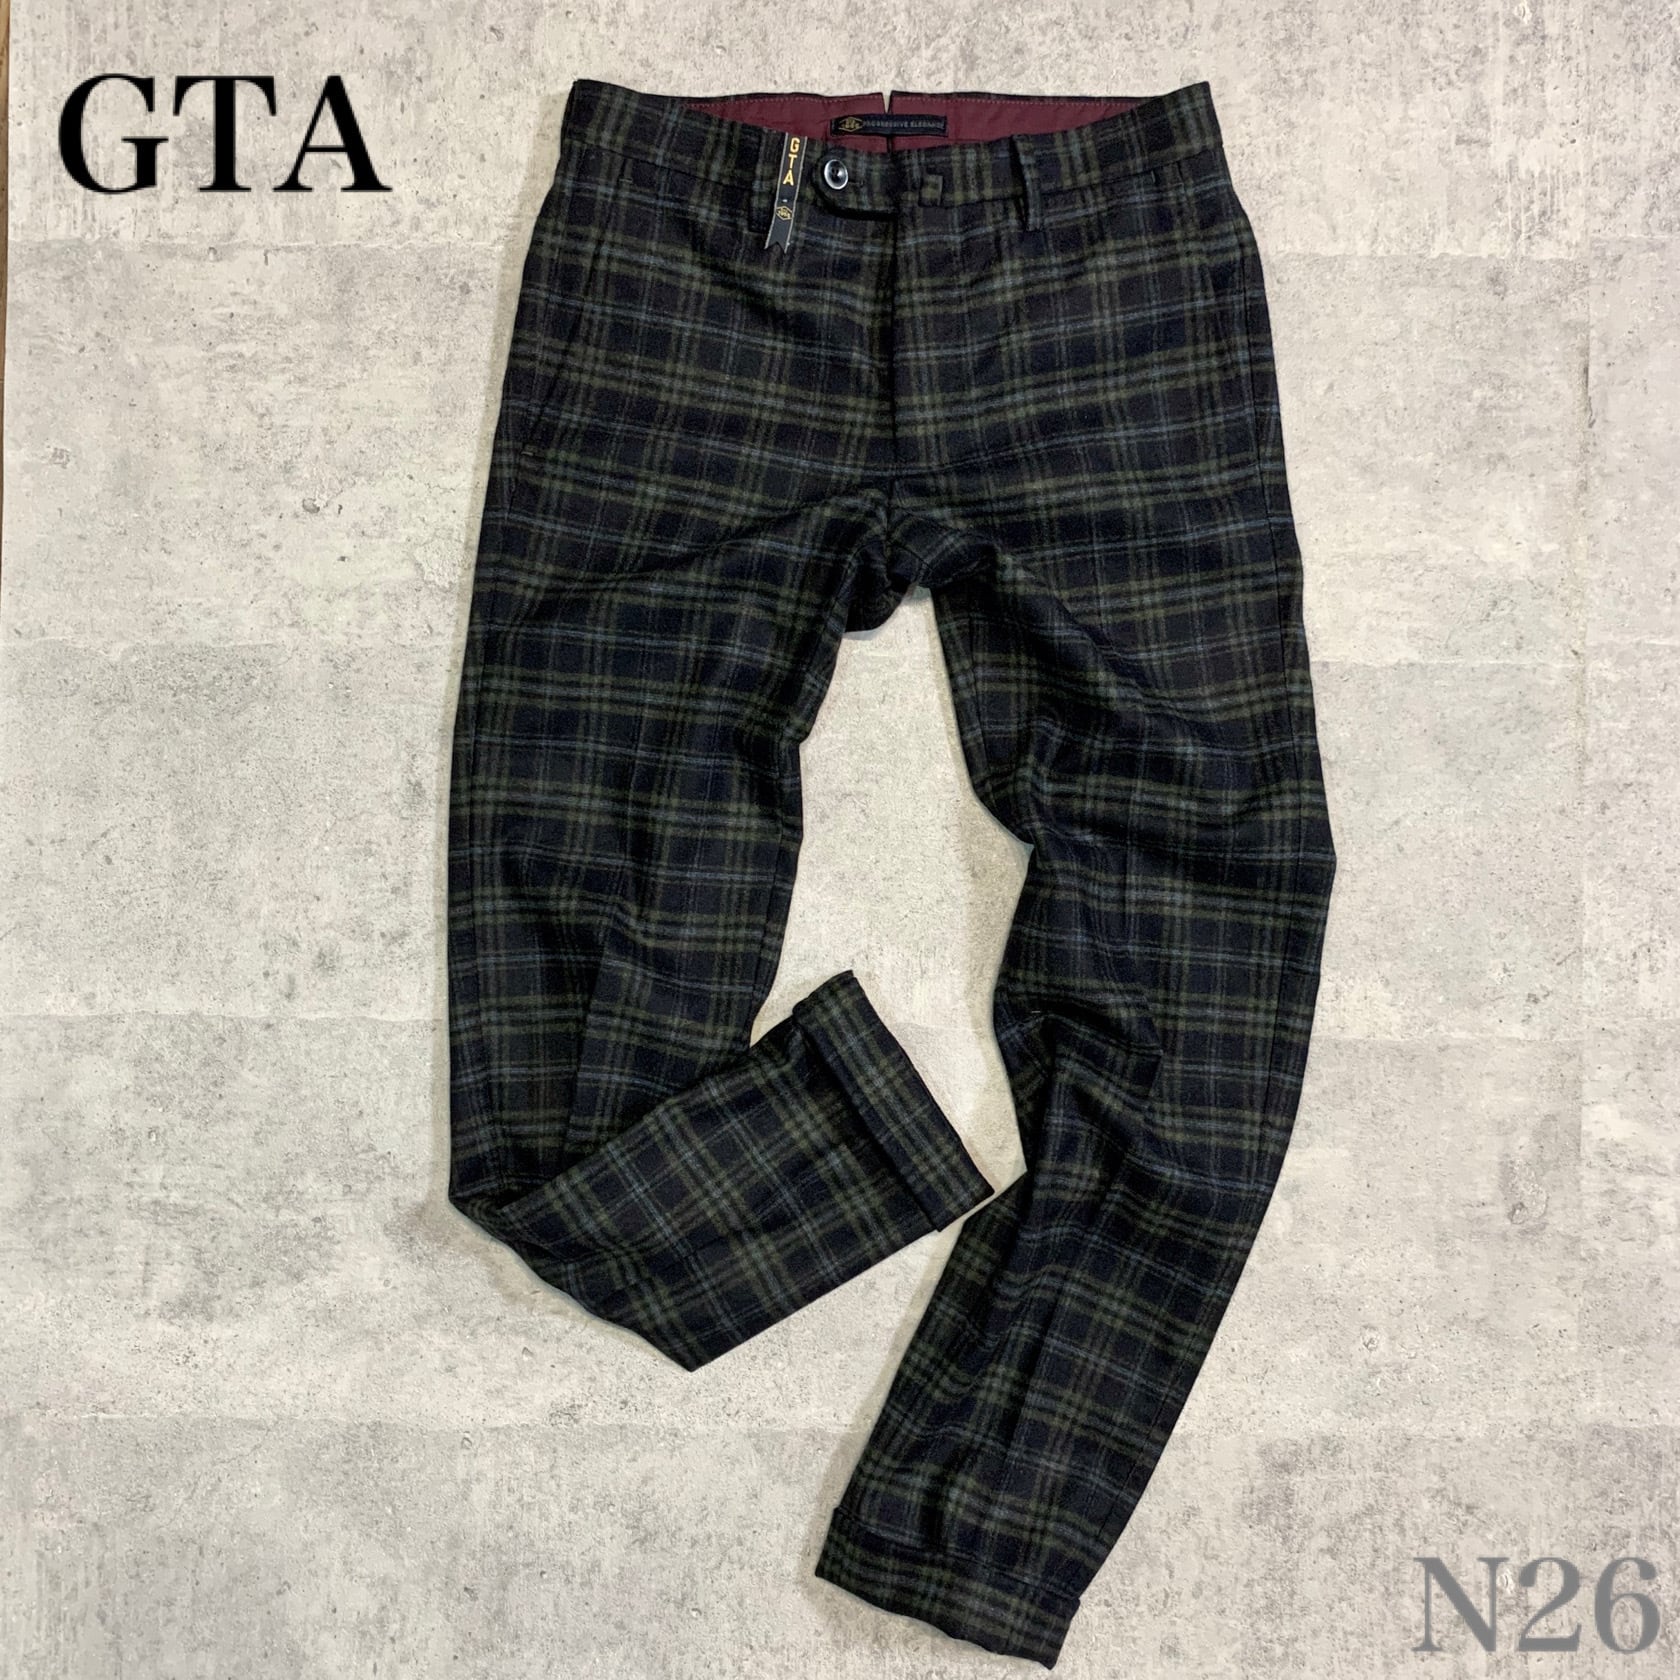 GTA ジーティーアー チェックパンツ ウールパンツ ネイビー 44 □ N26 